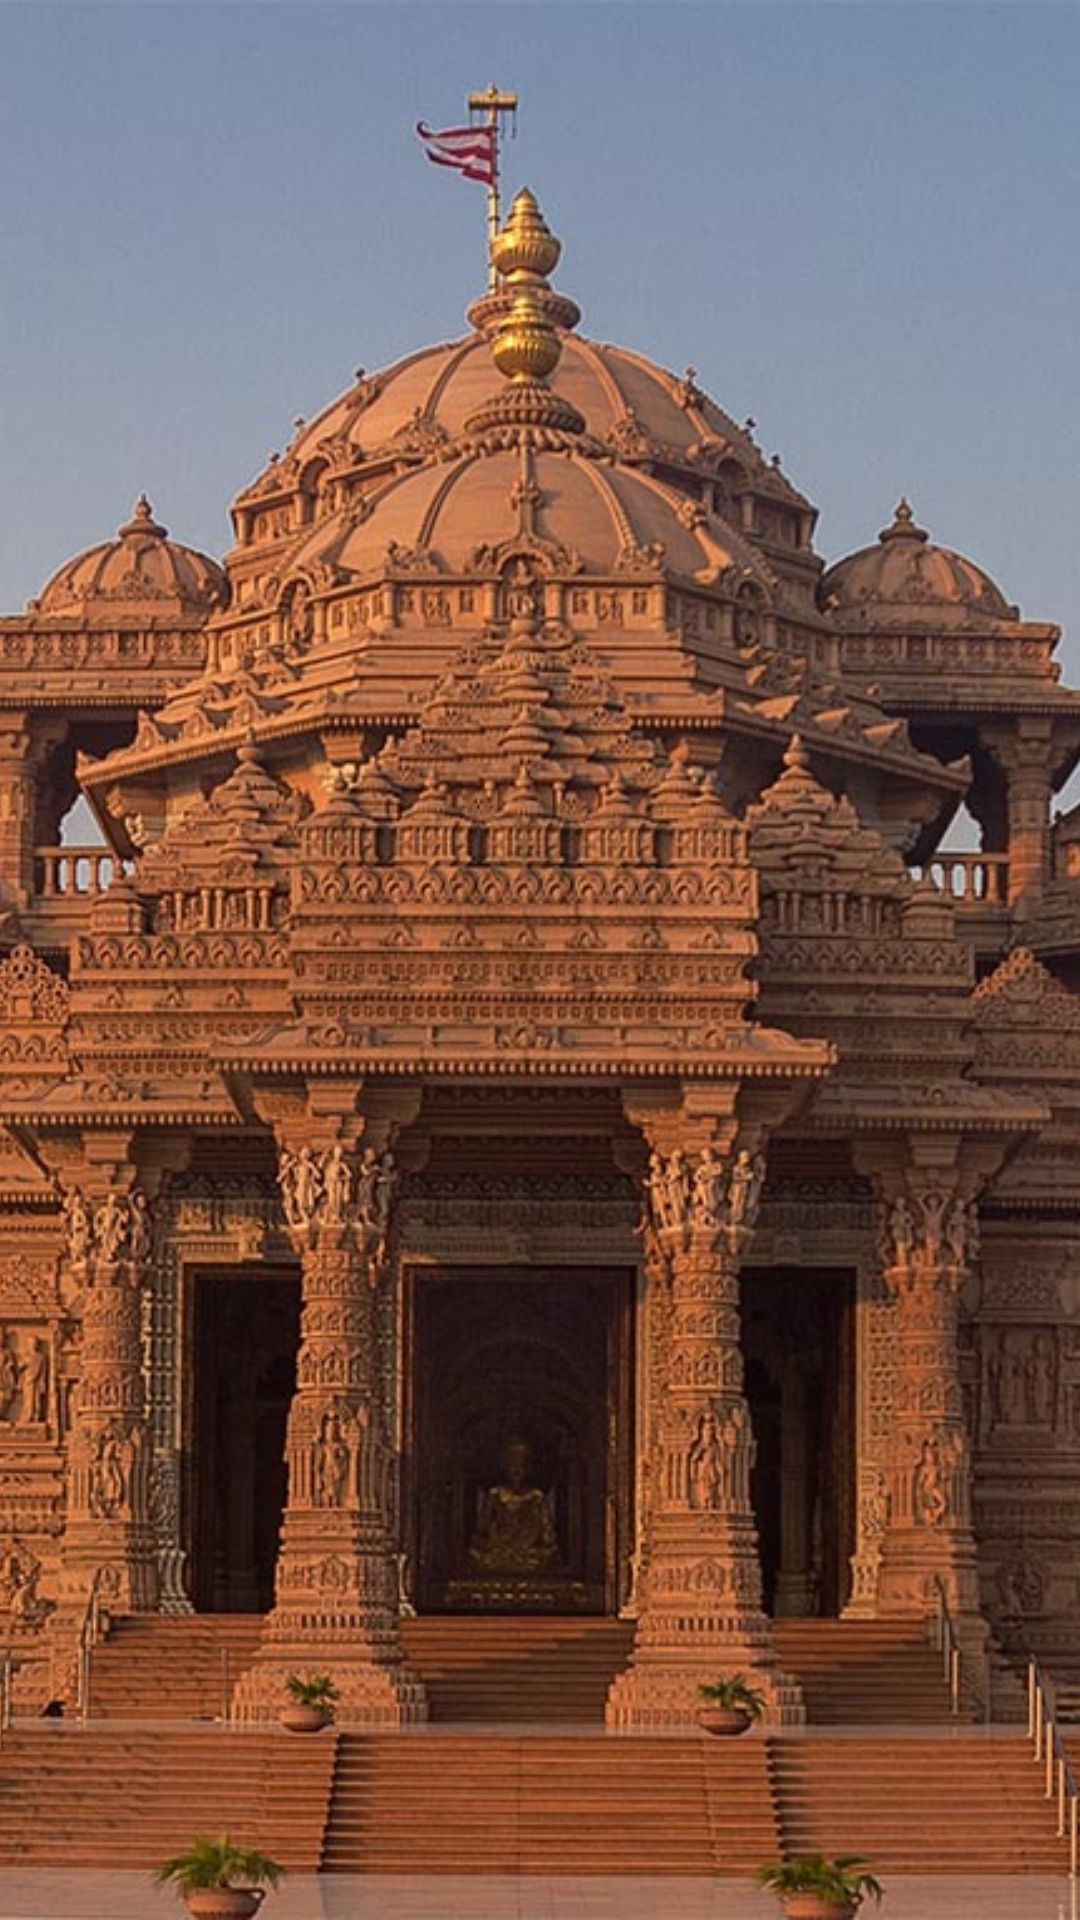 भारत में नहीं बल्कि यहां है दुनिया का सबसे बड़ा मंदिर